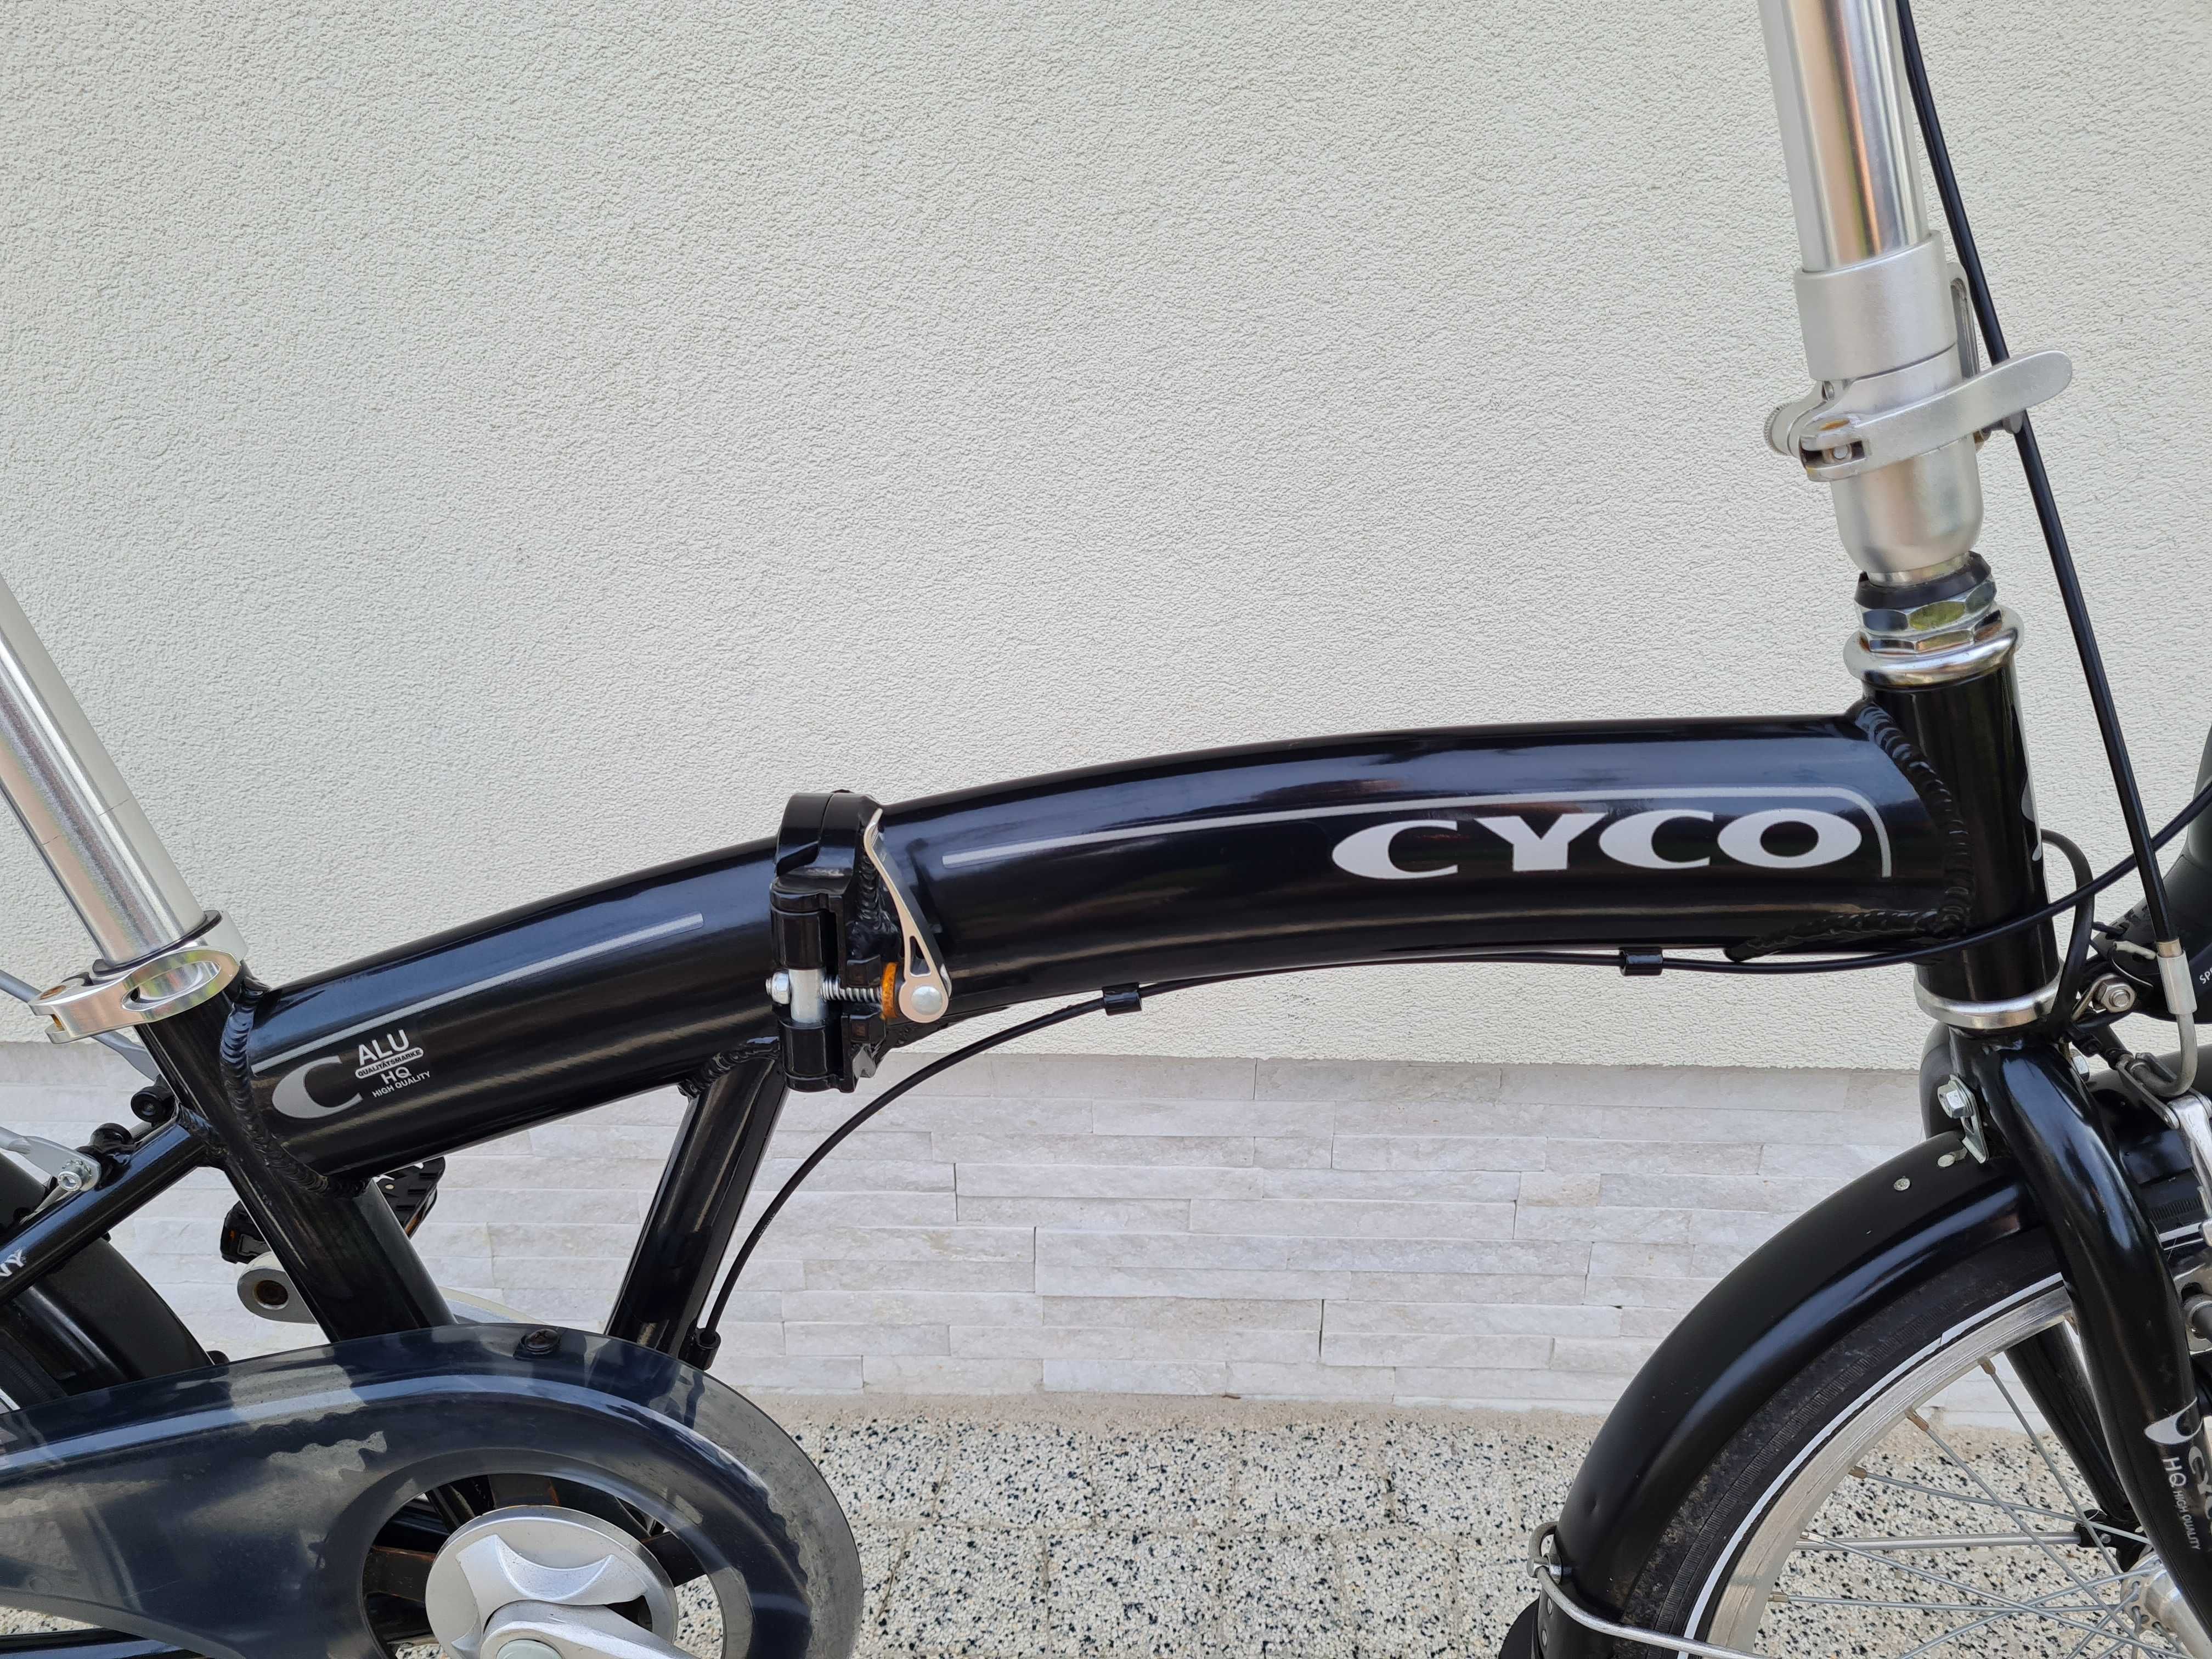 Rower CYCO - składak, koła 20, aluminiowy, kontra